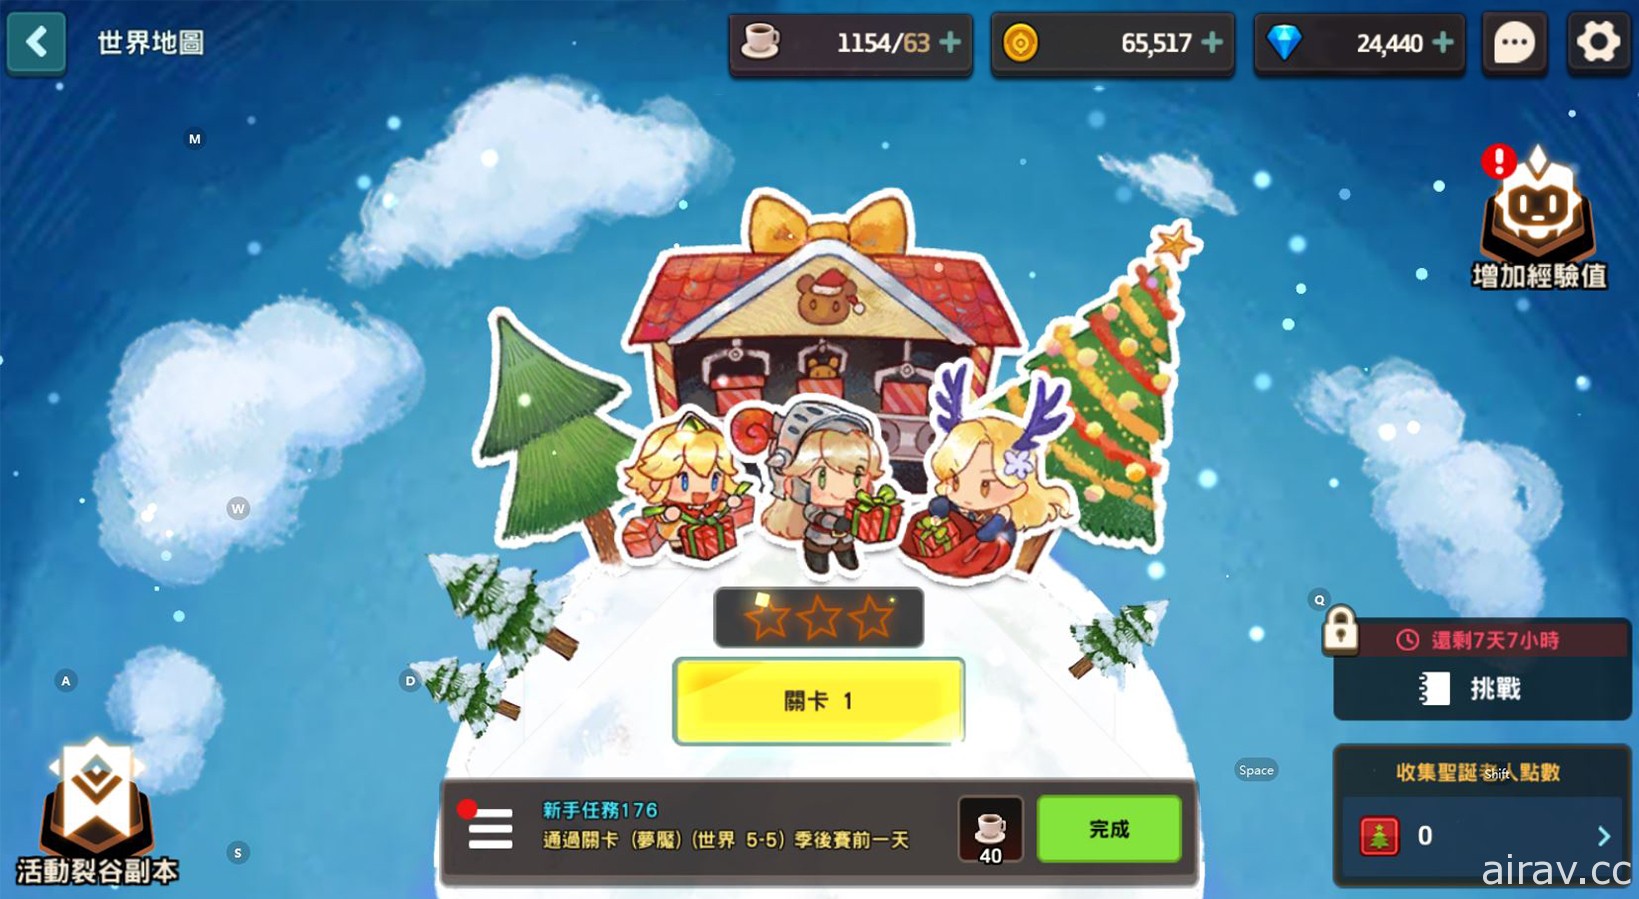 《守望傳說》推出全新英雄「聖誕老人小幫手魯」陪伴玩家一起慶祝新年